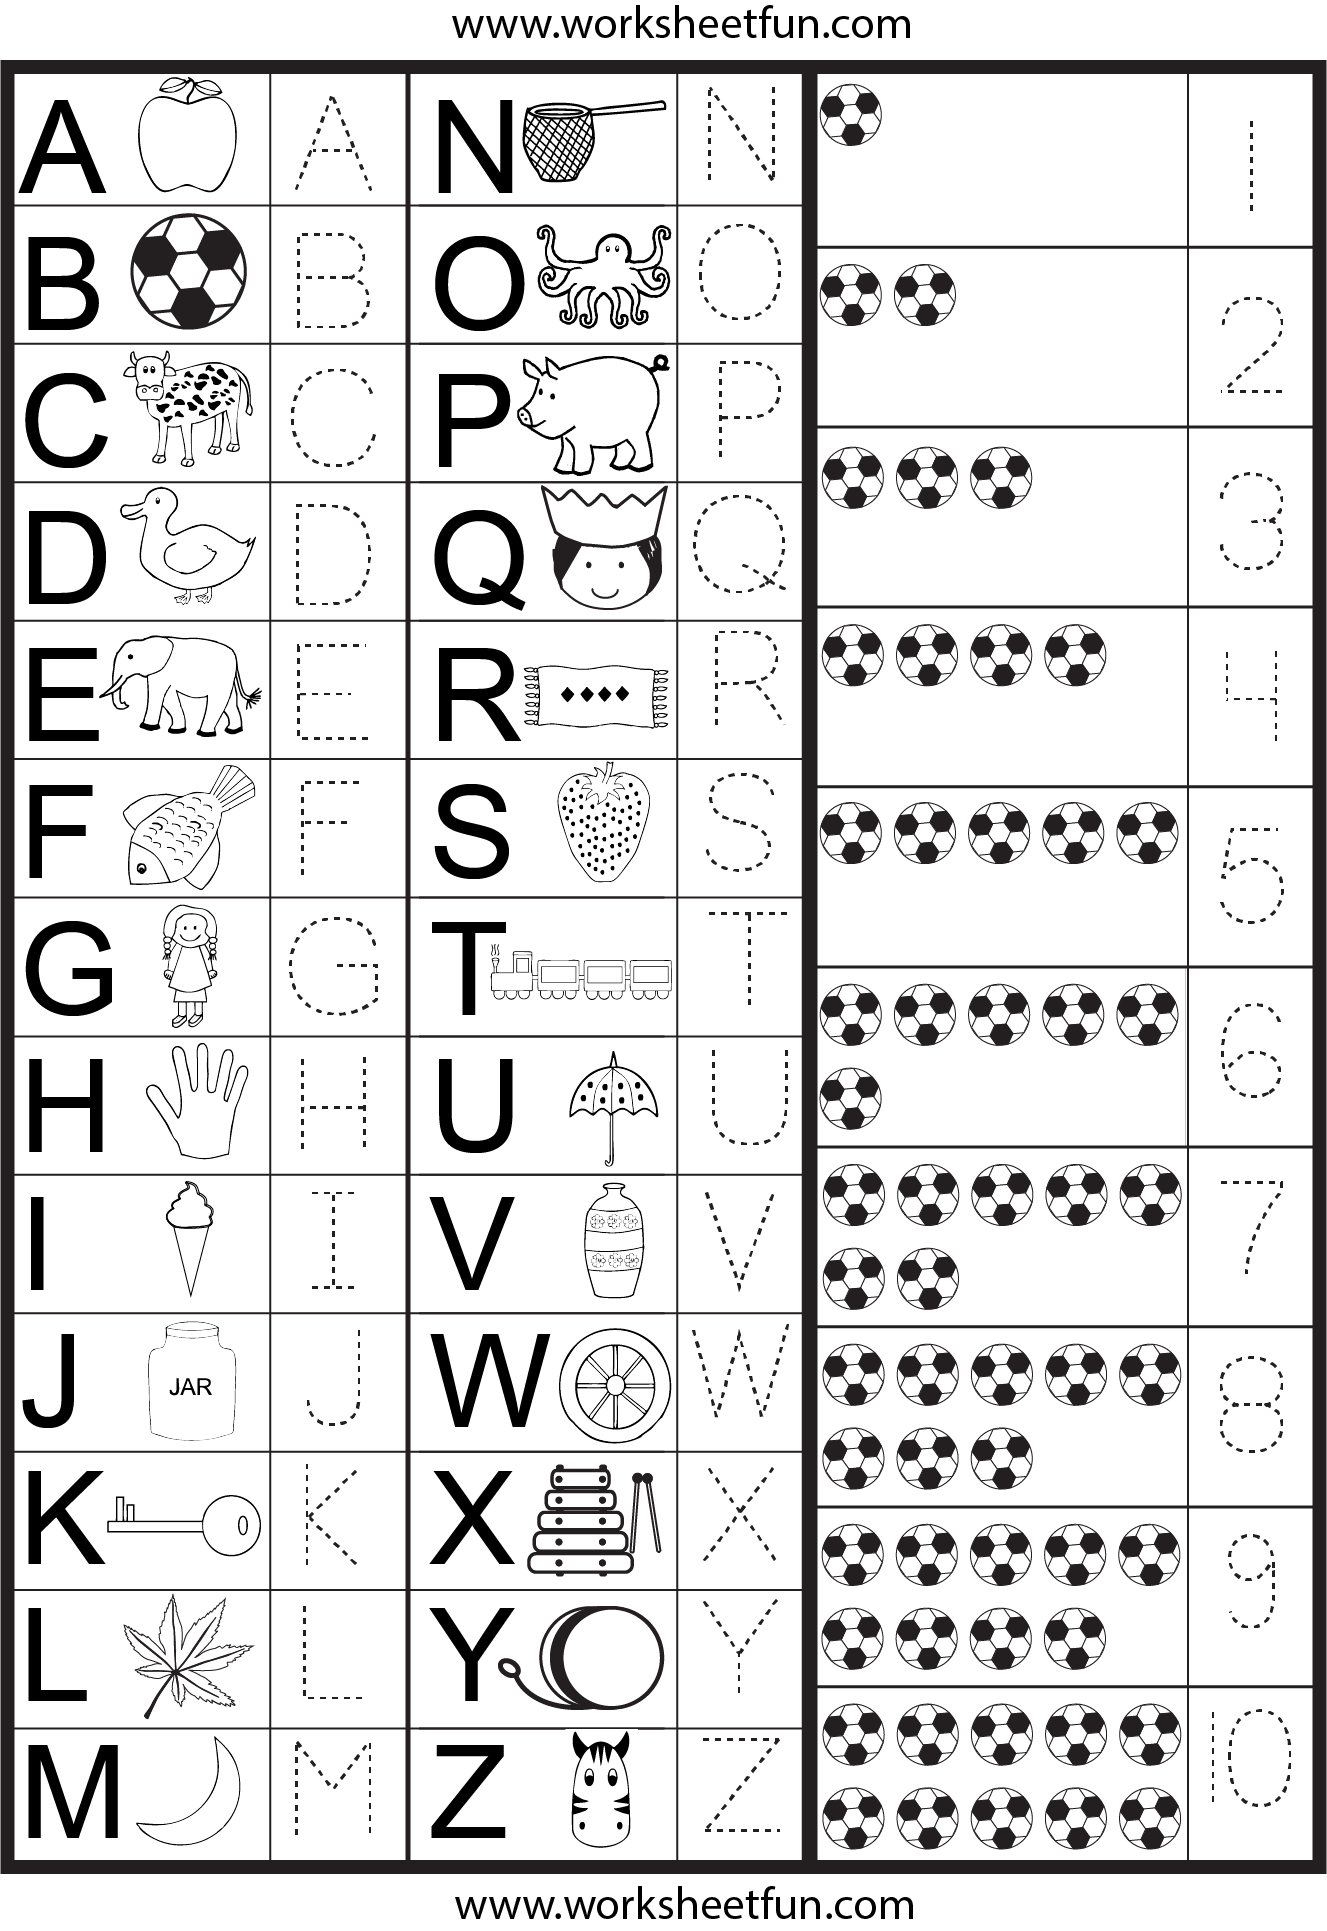 letters-and-numbers-tracing-worksheet-free-printable-worksheets-worksheetfun